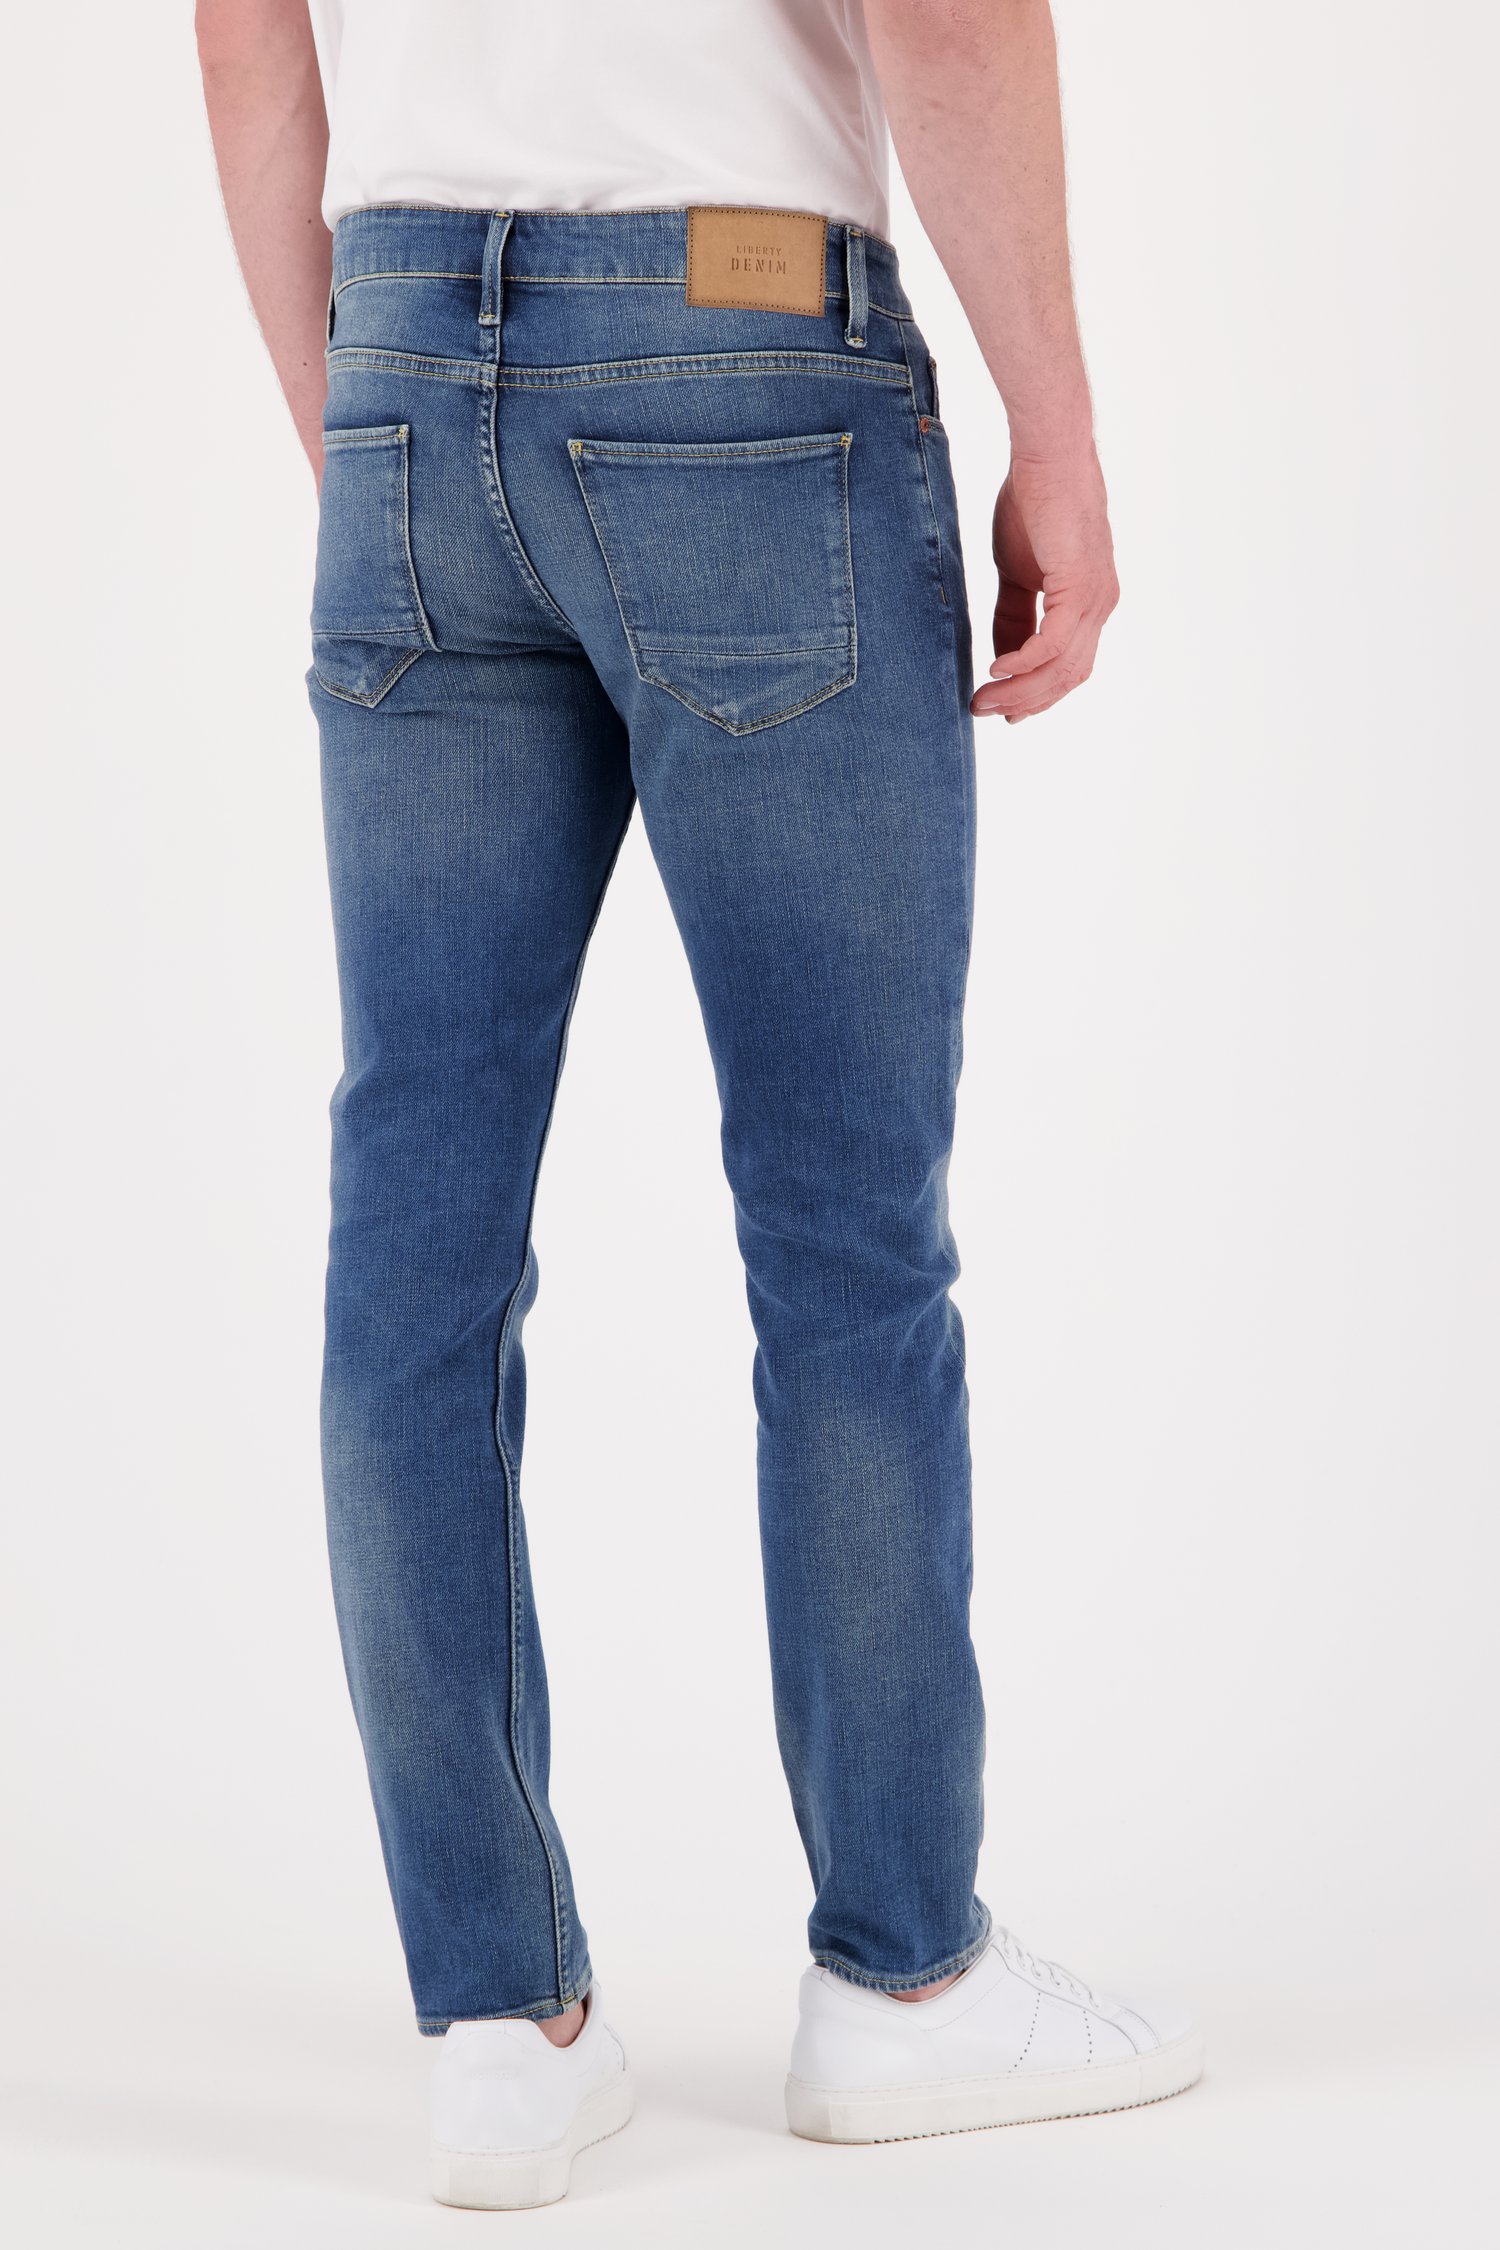 Blauwe jeans – Tim – slim fit – L32 van Liberty Island Denim voor Heren